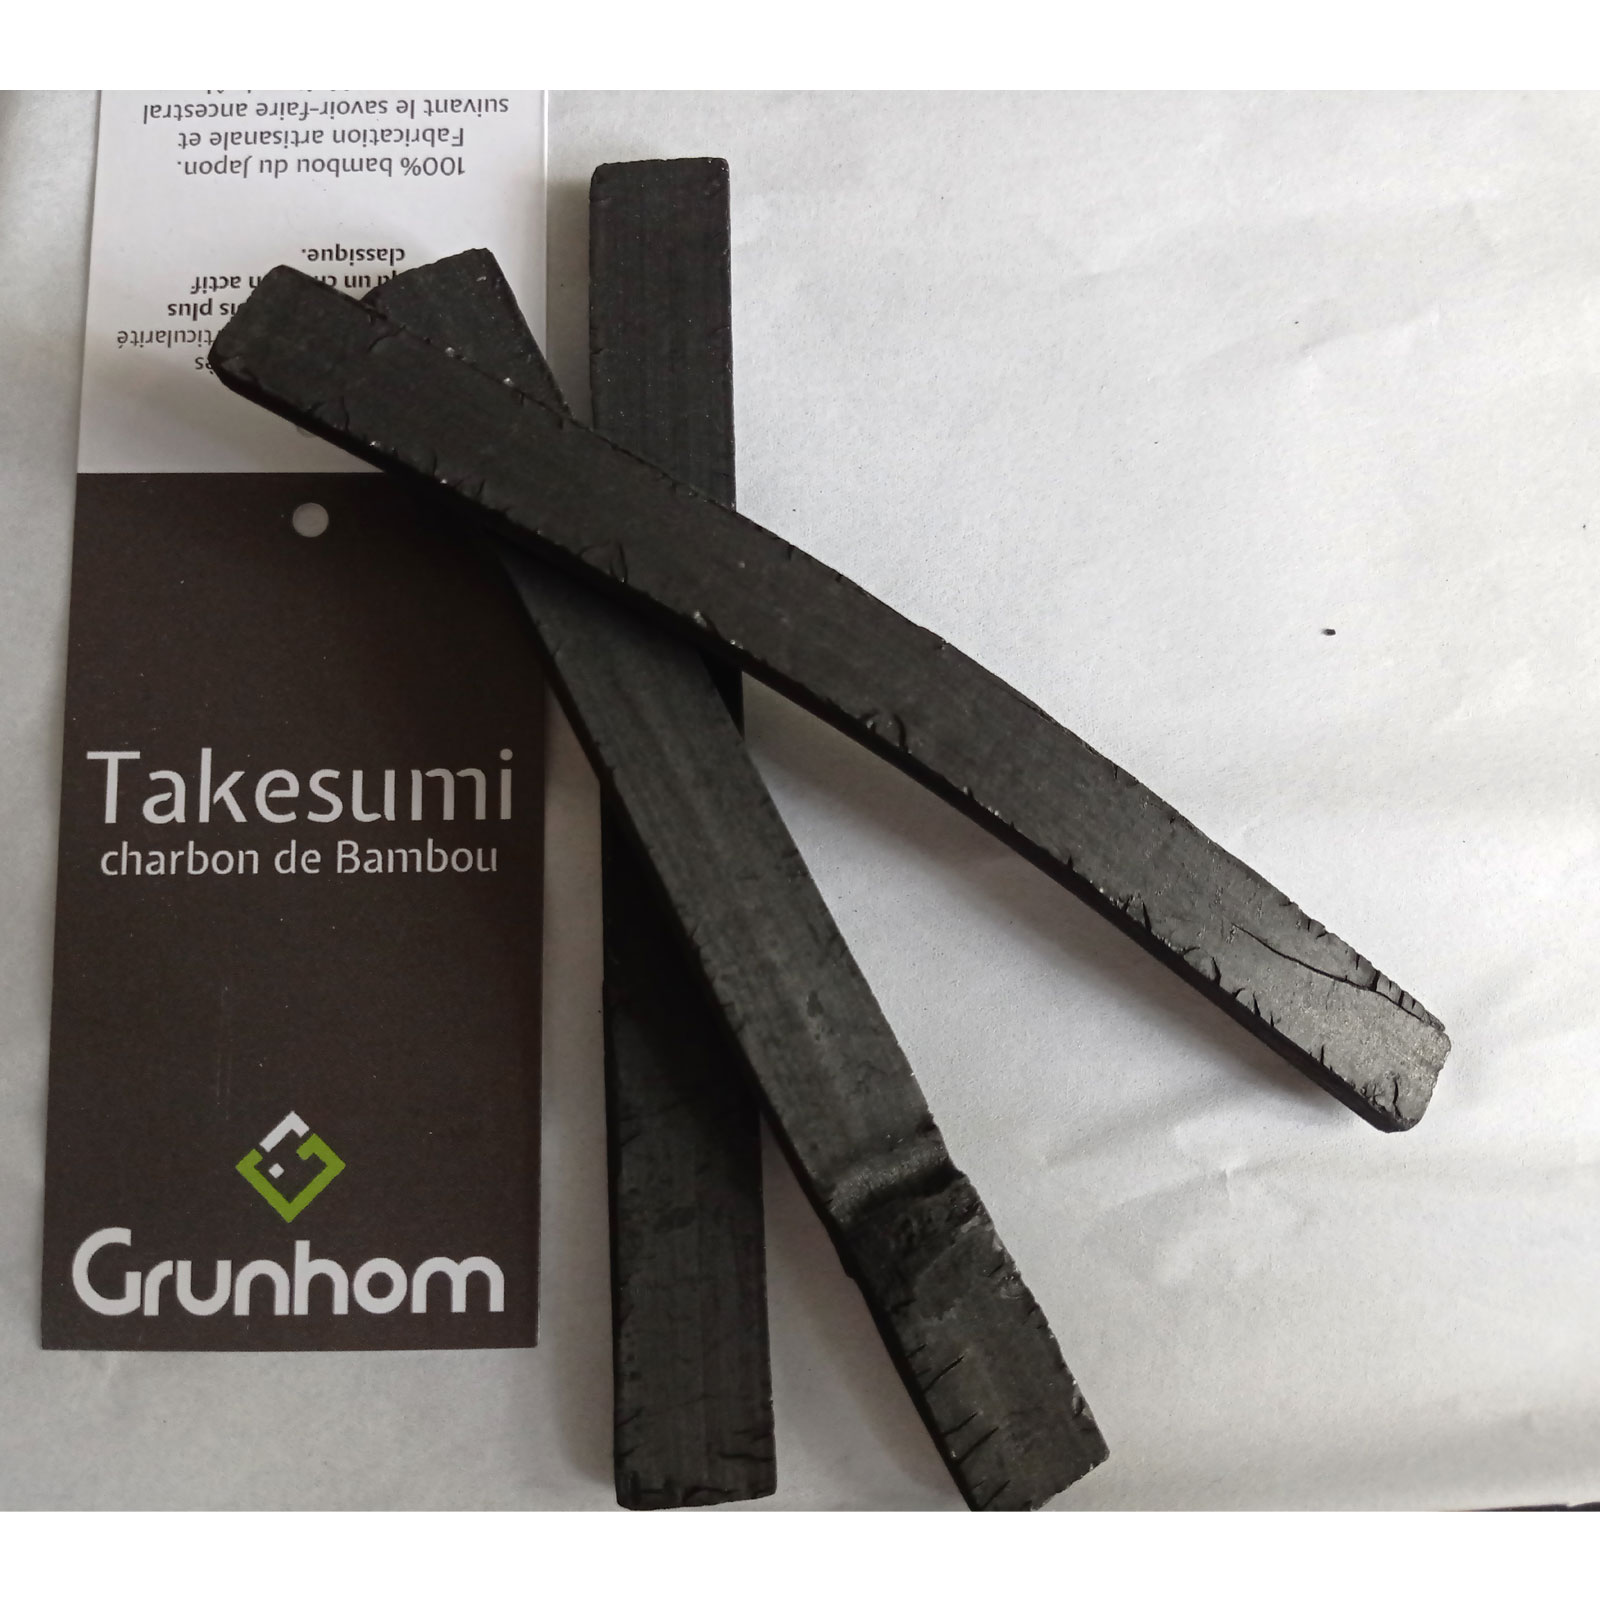 Takesumi charbon Bambou purificateur d'eau 100% naturel - Grunhom